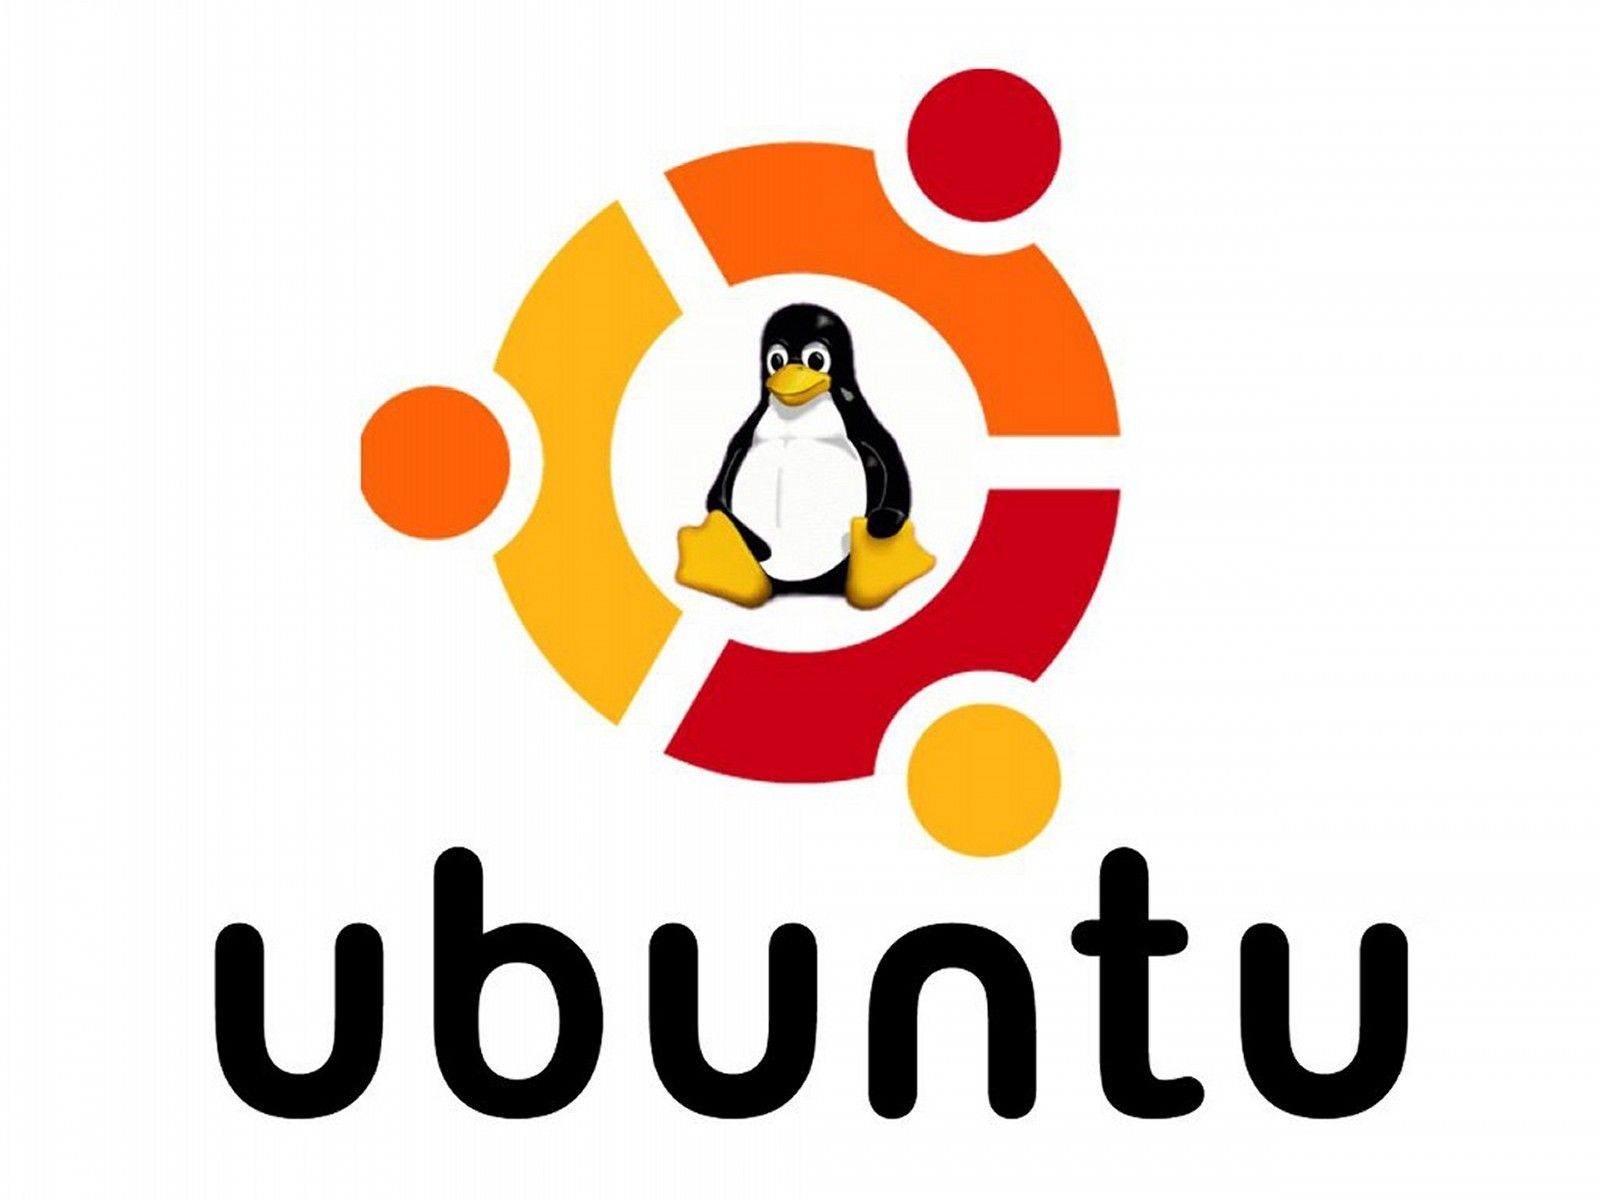 Set up Ubuntu in Hyper-V